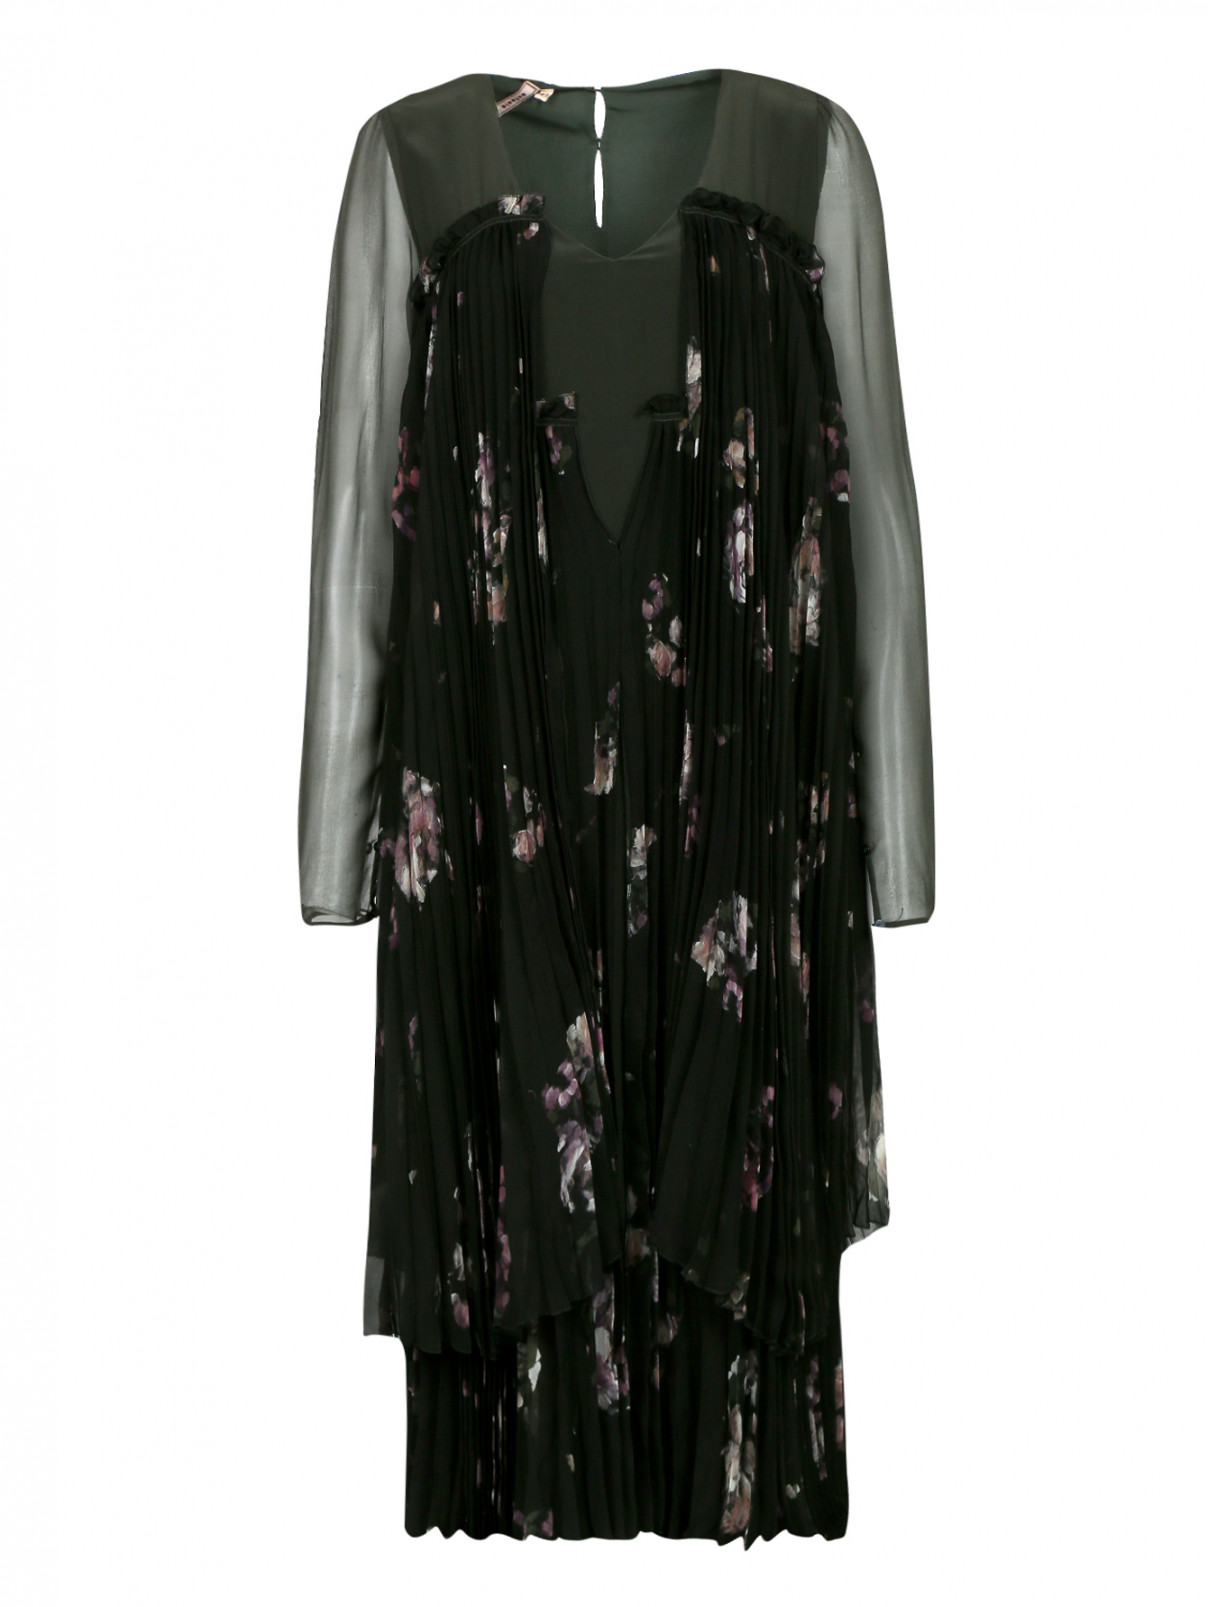 Платье из шелка с цветочным узором Antonio Marras  –  Общий вид  – Цвет:  Зеленый